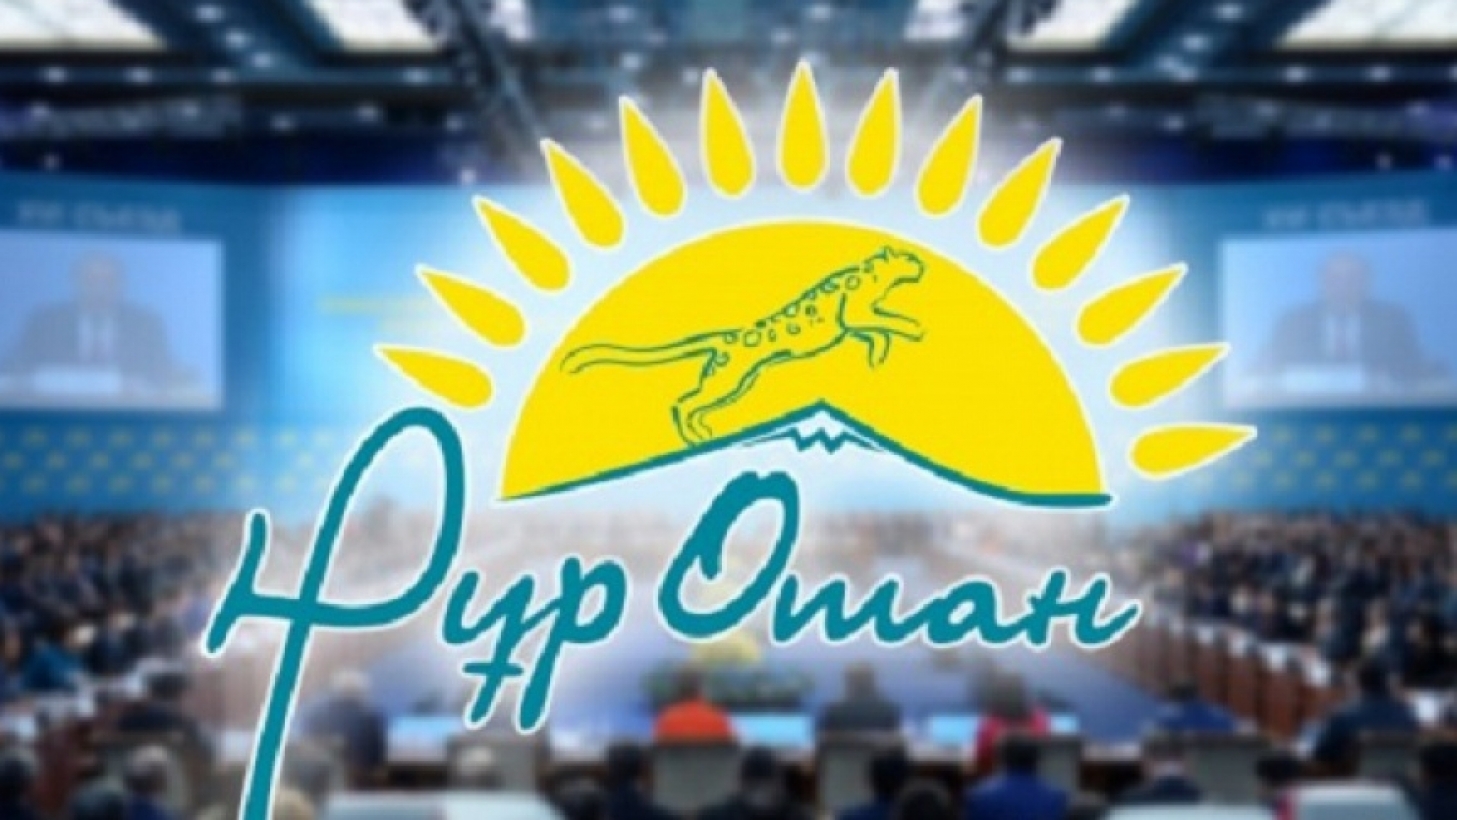 В Астане начался XVIII Съезд партии "Нұр Отан" под председательством Нурсултана Назарбаева